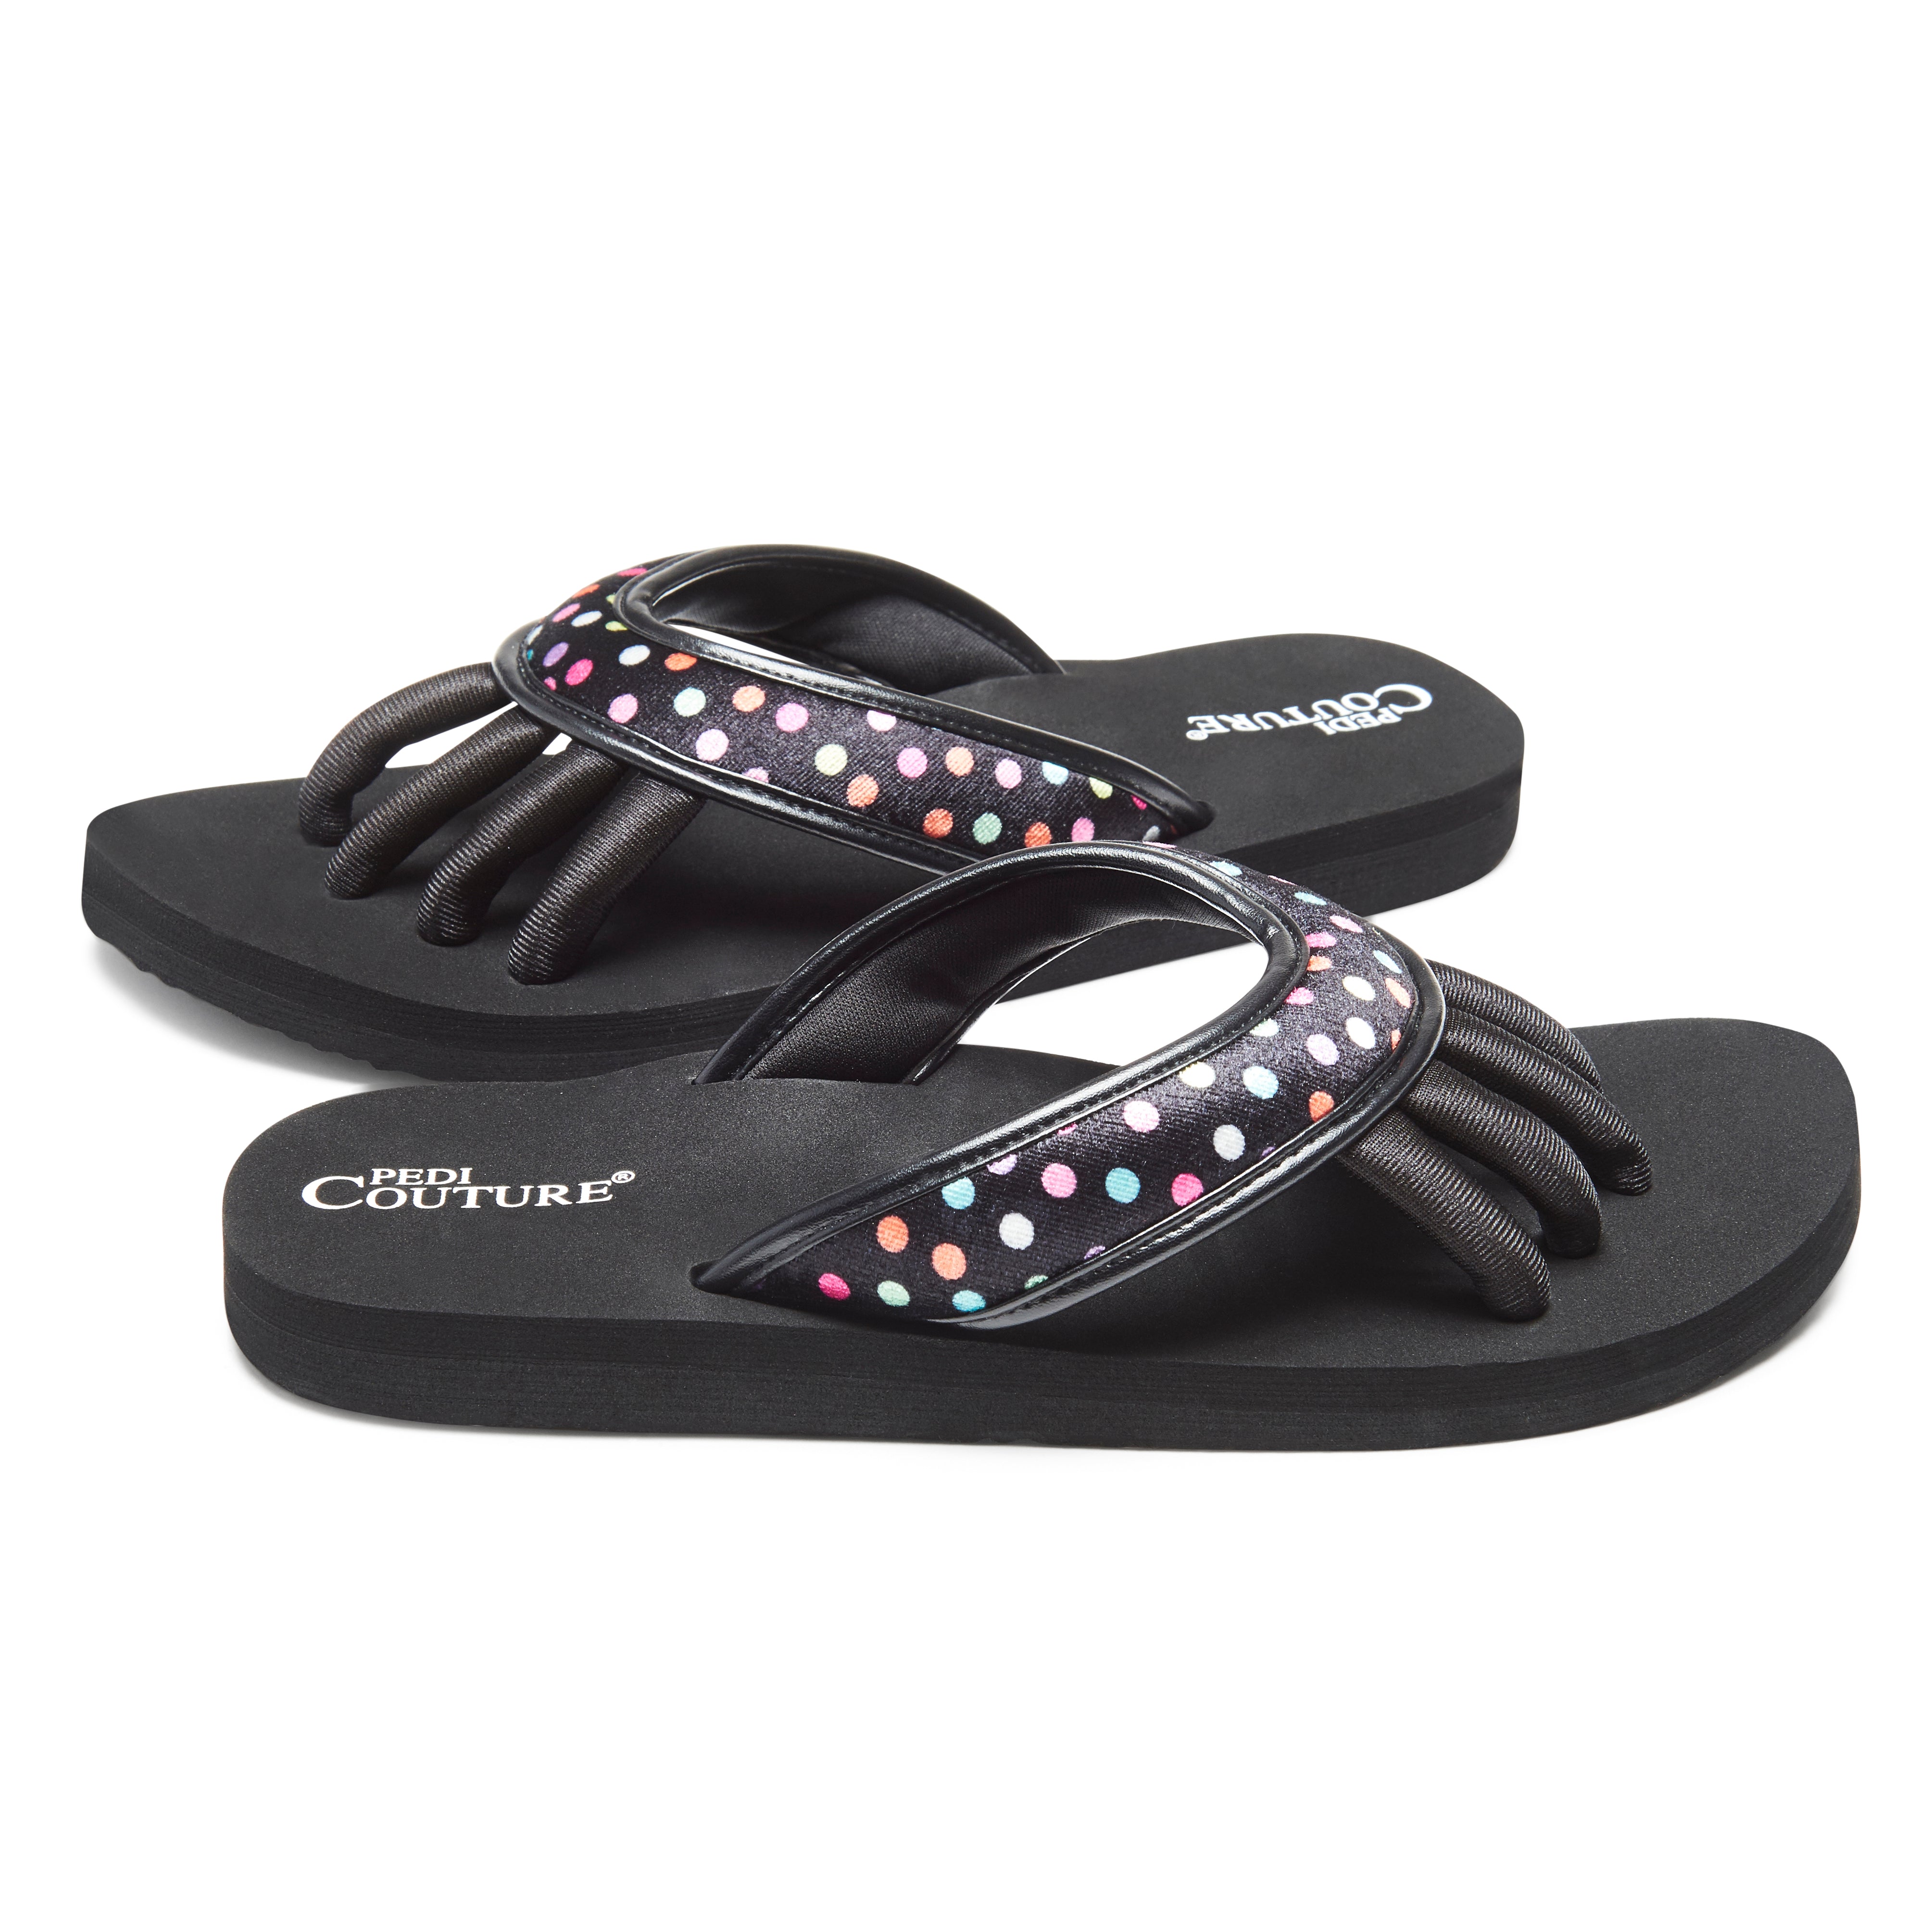 Pedi Couture Black Polka Dots Tamaño M – sandalia para pedicure ECO-FRIENDLY, cómodas y duraderas